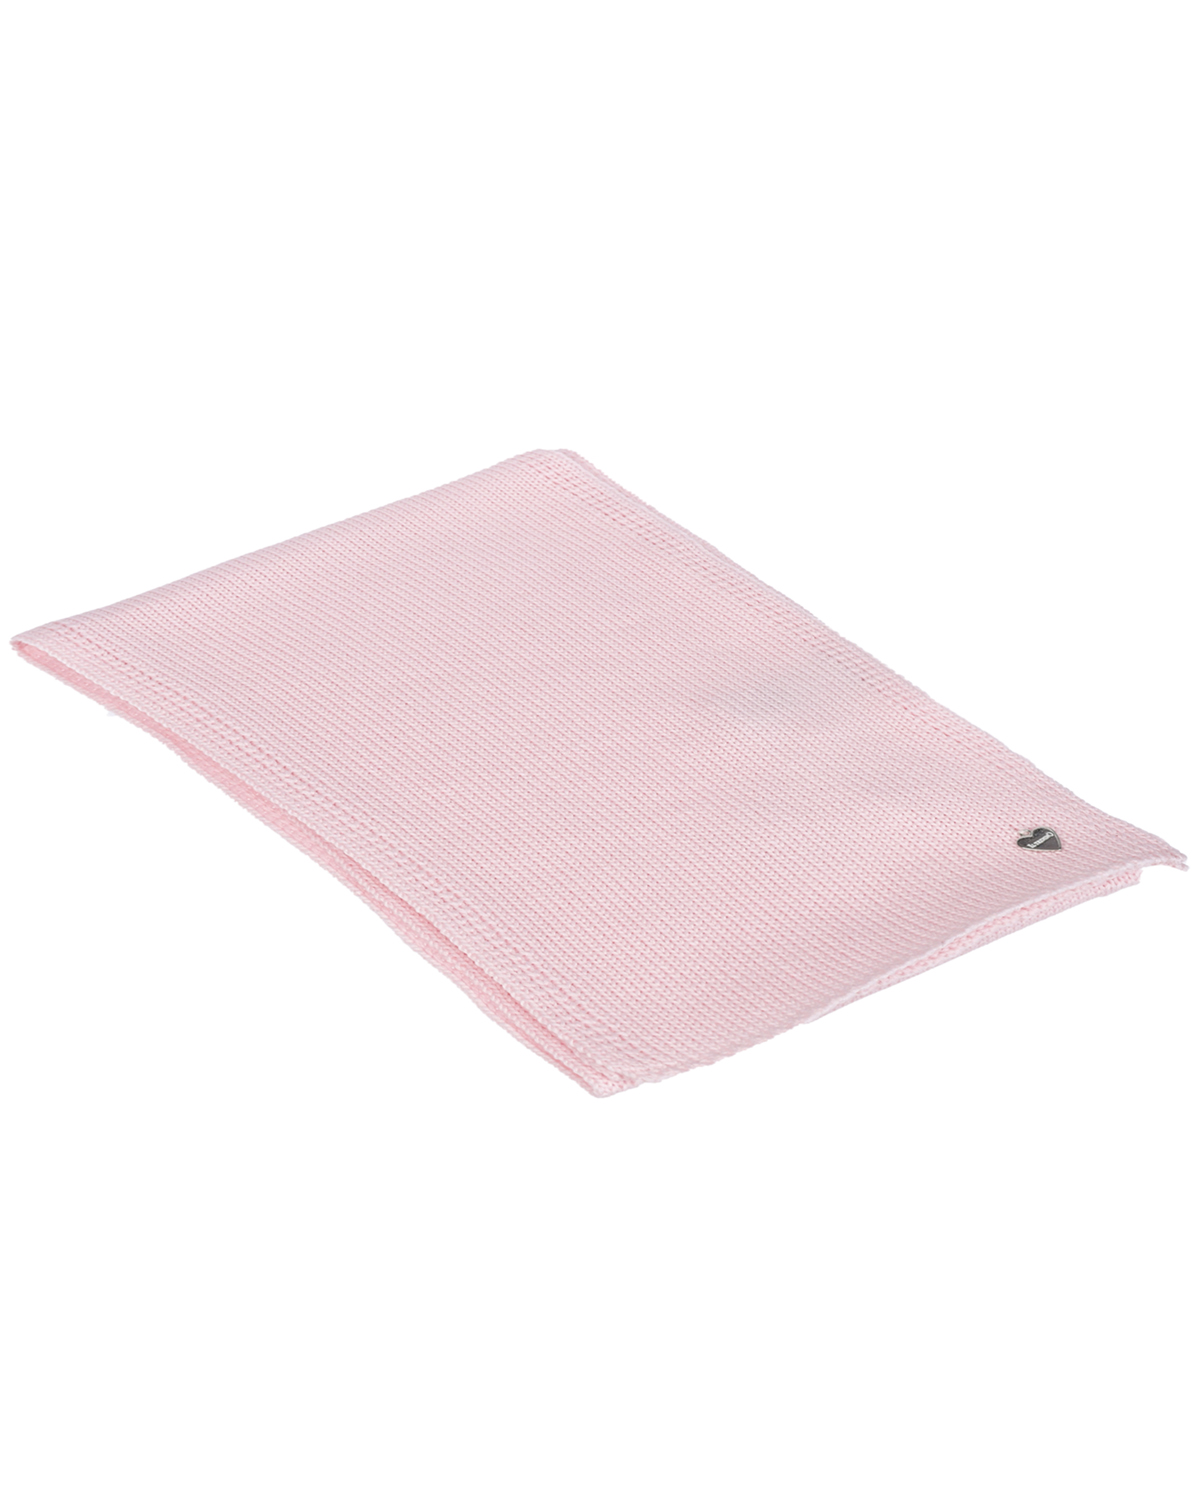 Нежно-розовый шарф из шерсти, 20х140 см Il Trenino детское